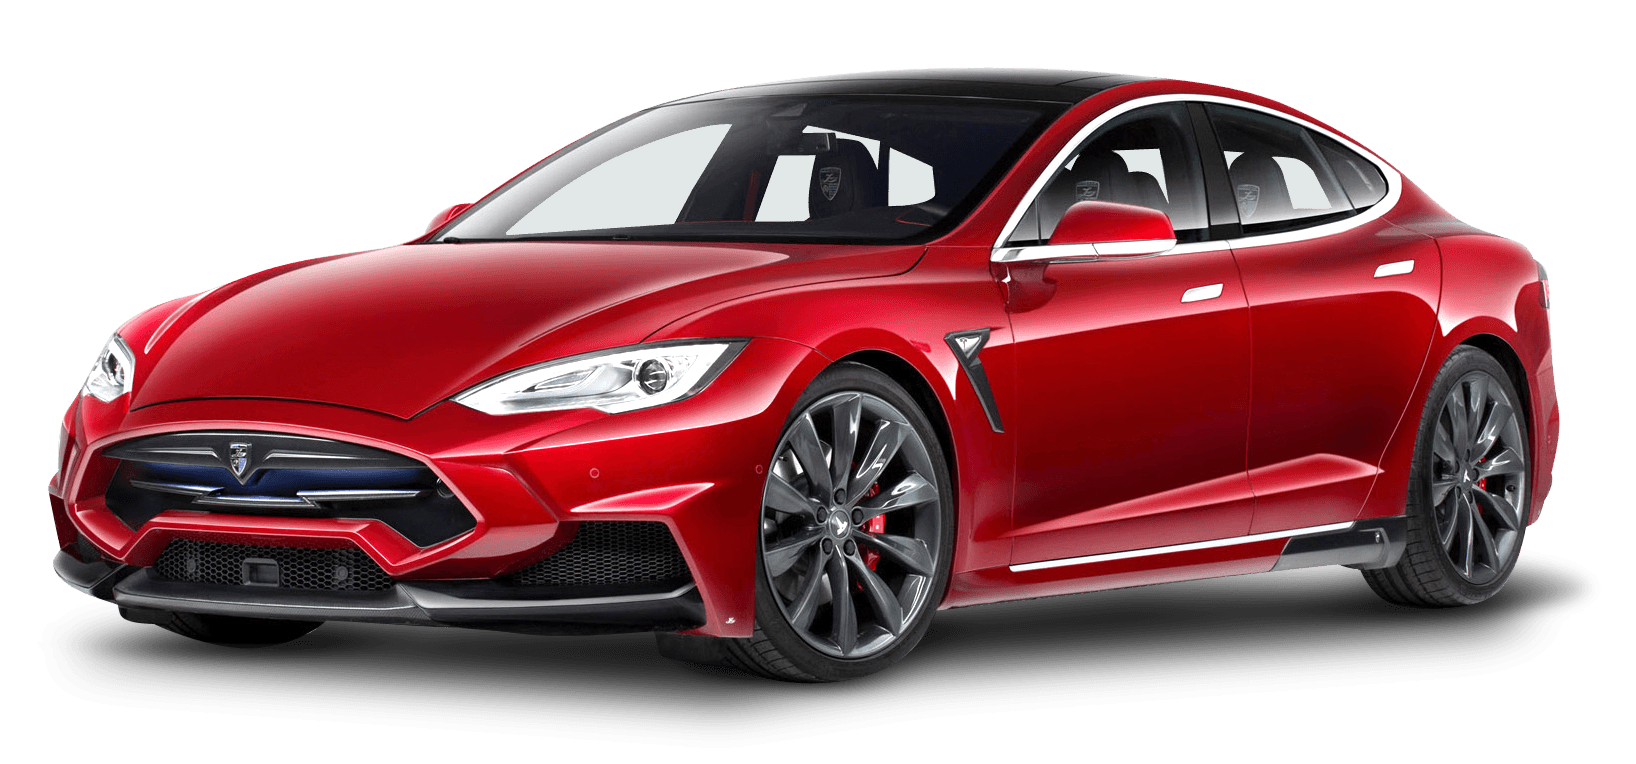 La fabbrica di automobili più produttiva d'America è marchiata Tesla -  Innovation Post